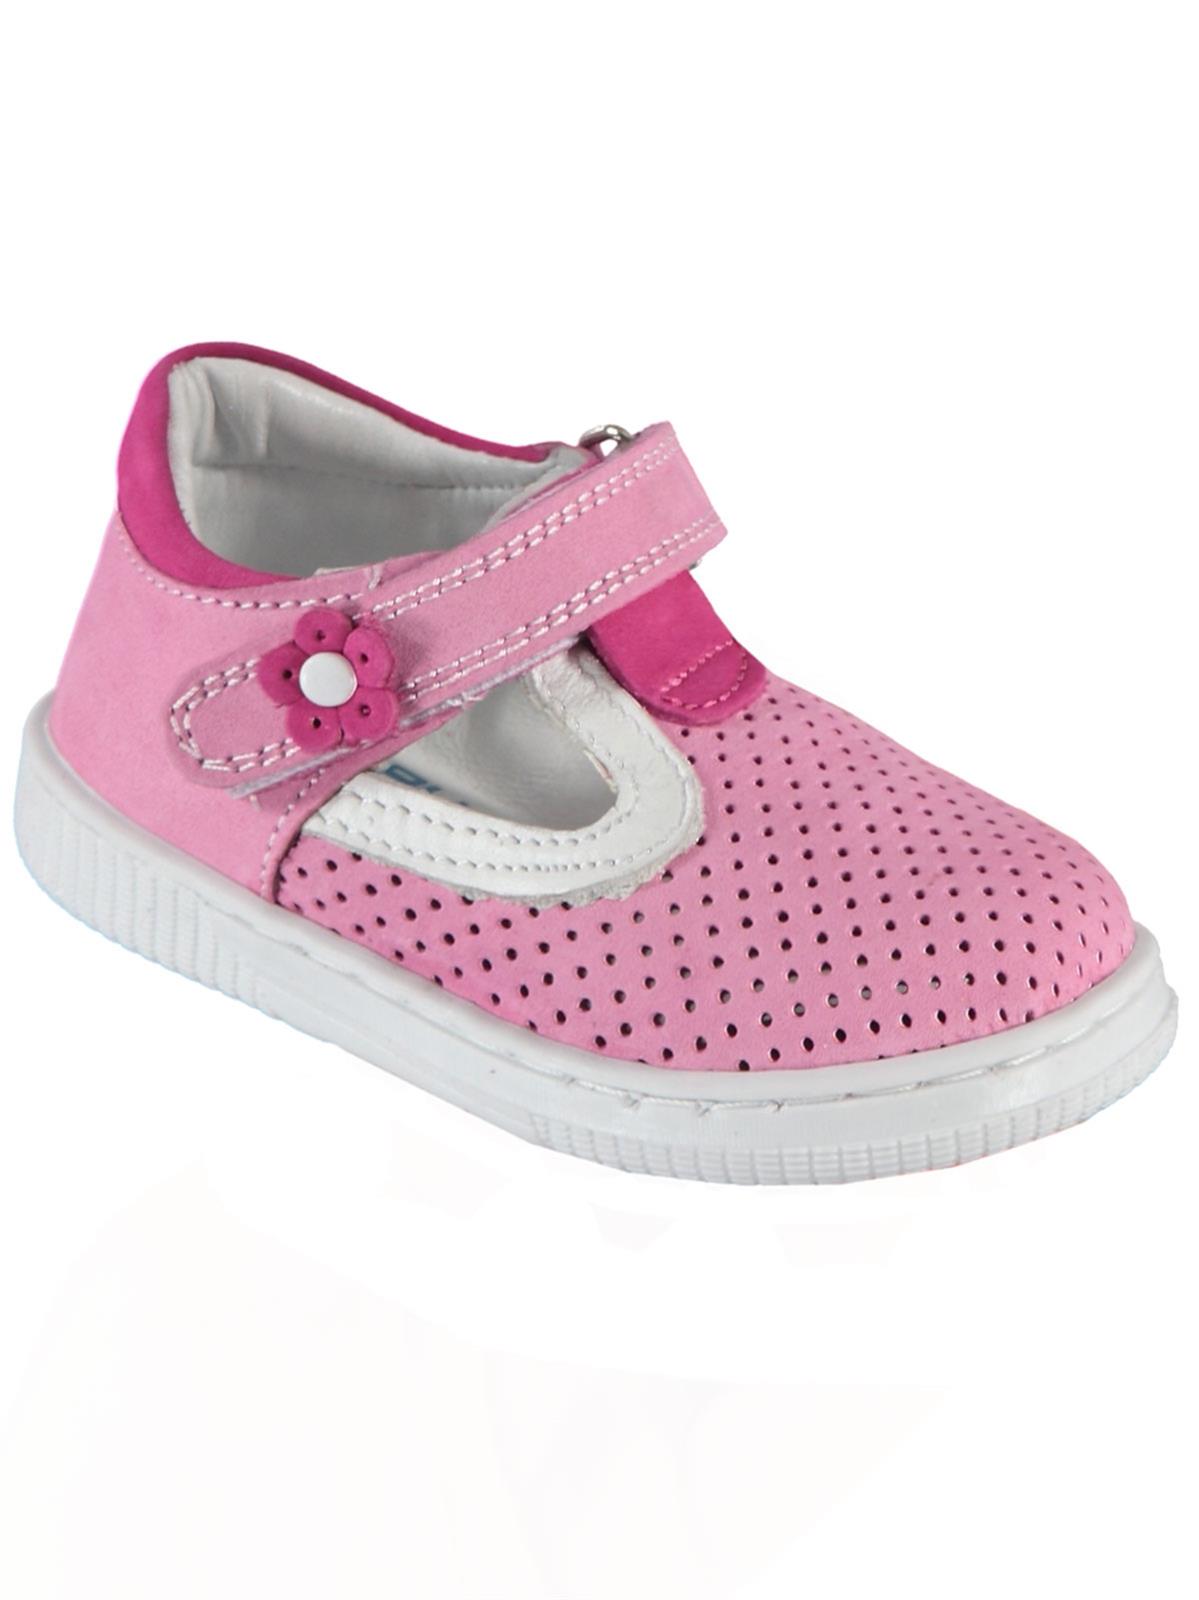 Baby Force Kız Bebek Deri İlkadım Ayakkabısı 19-22 Numara Pembe